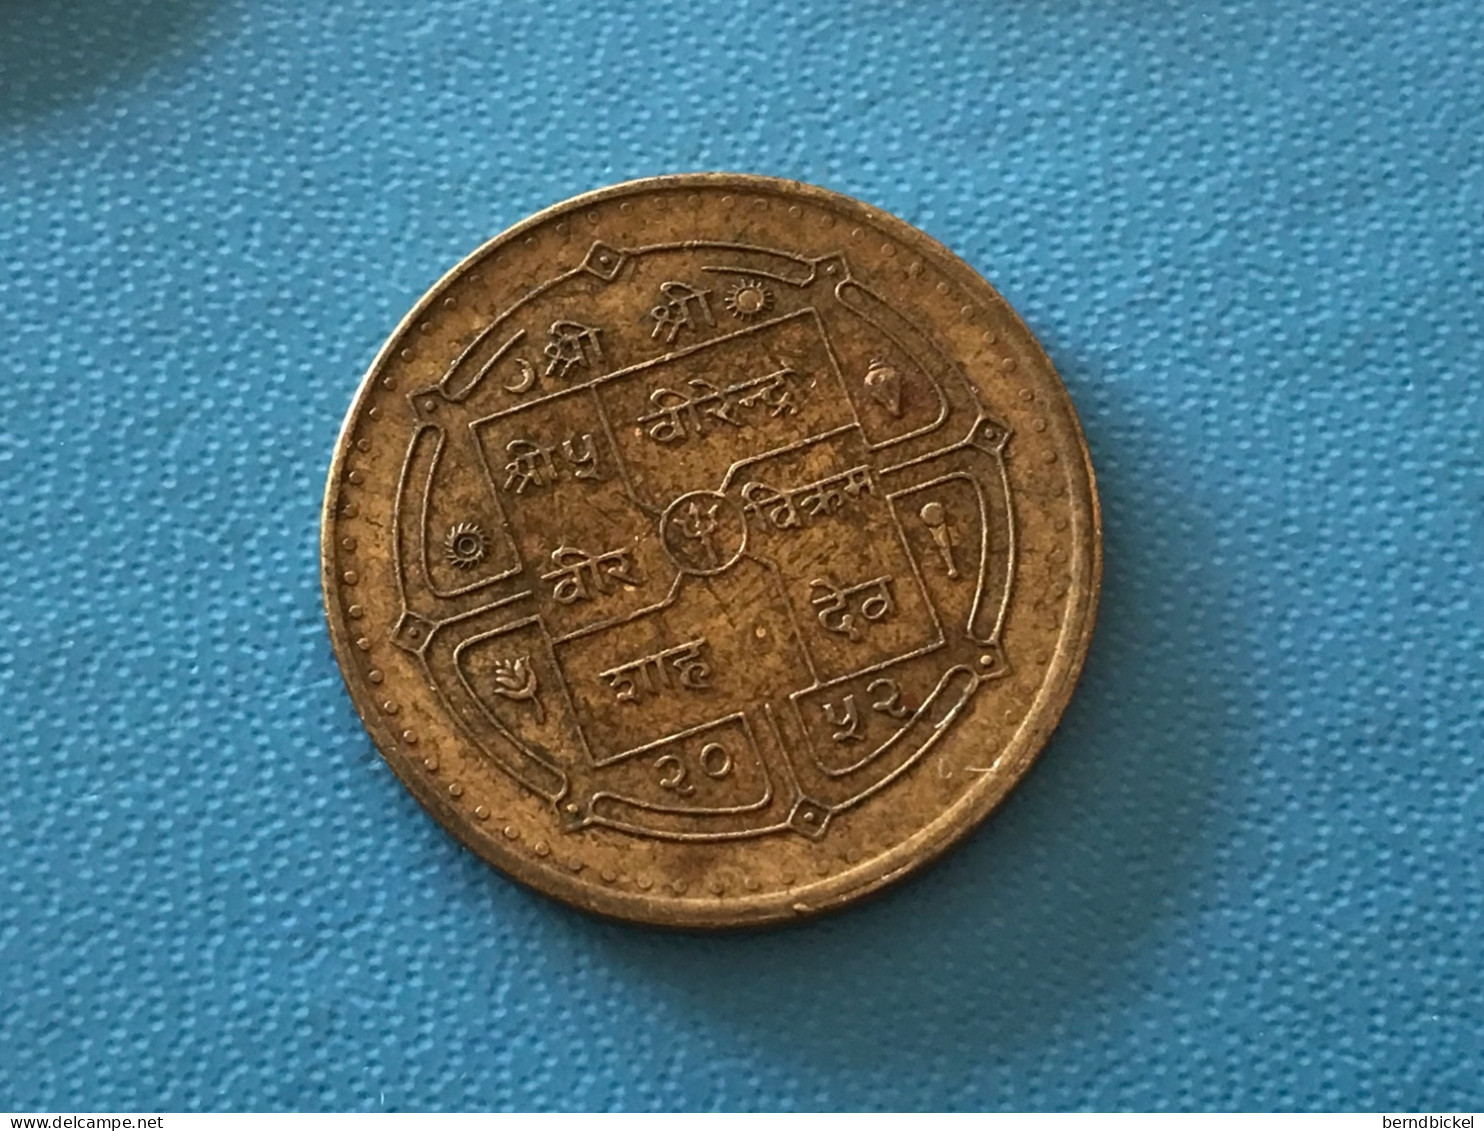 Münze Münzen Umlaufmünze Gedenkmünze Nepal 1 Rupie 1995 UN 50 Jahre - Nepal